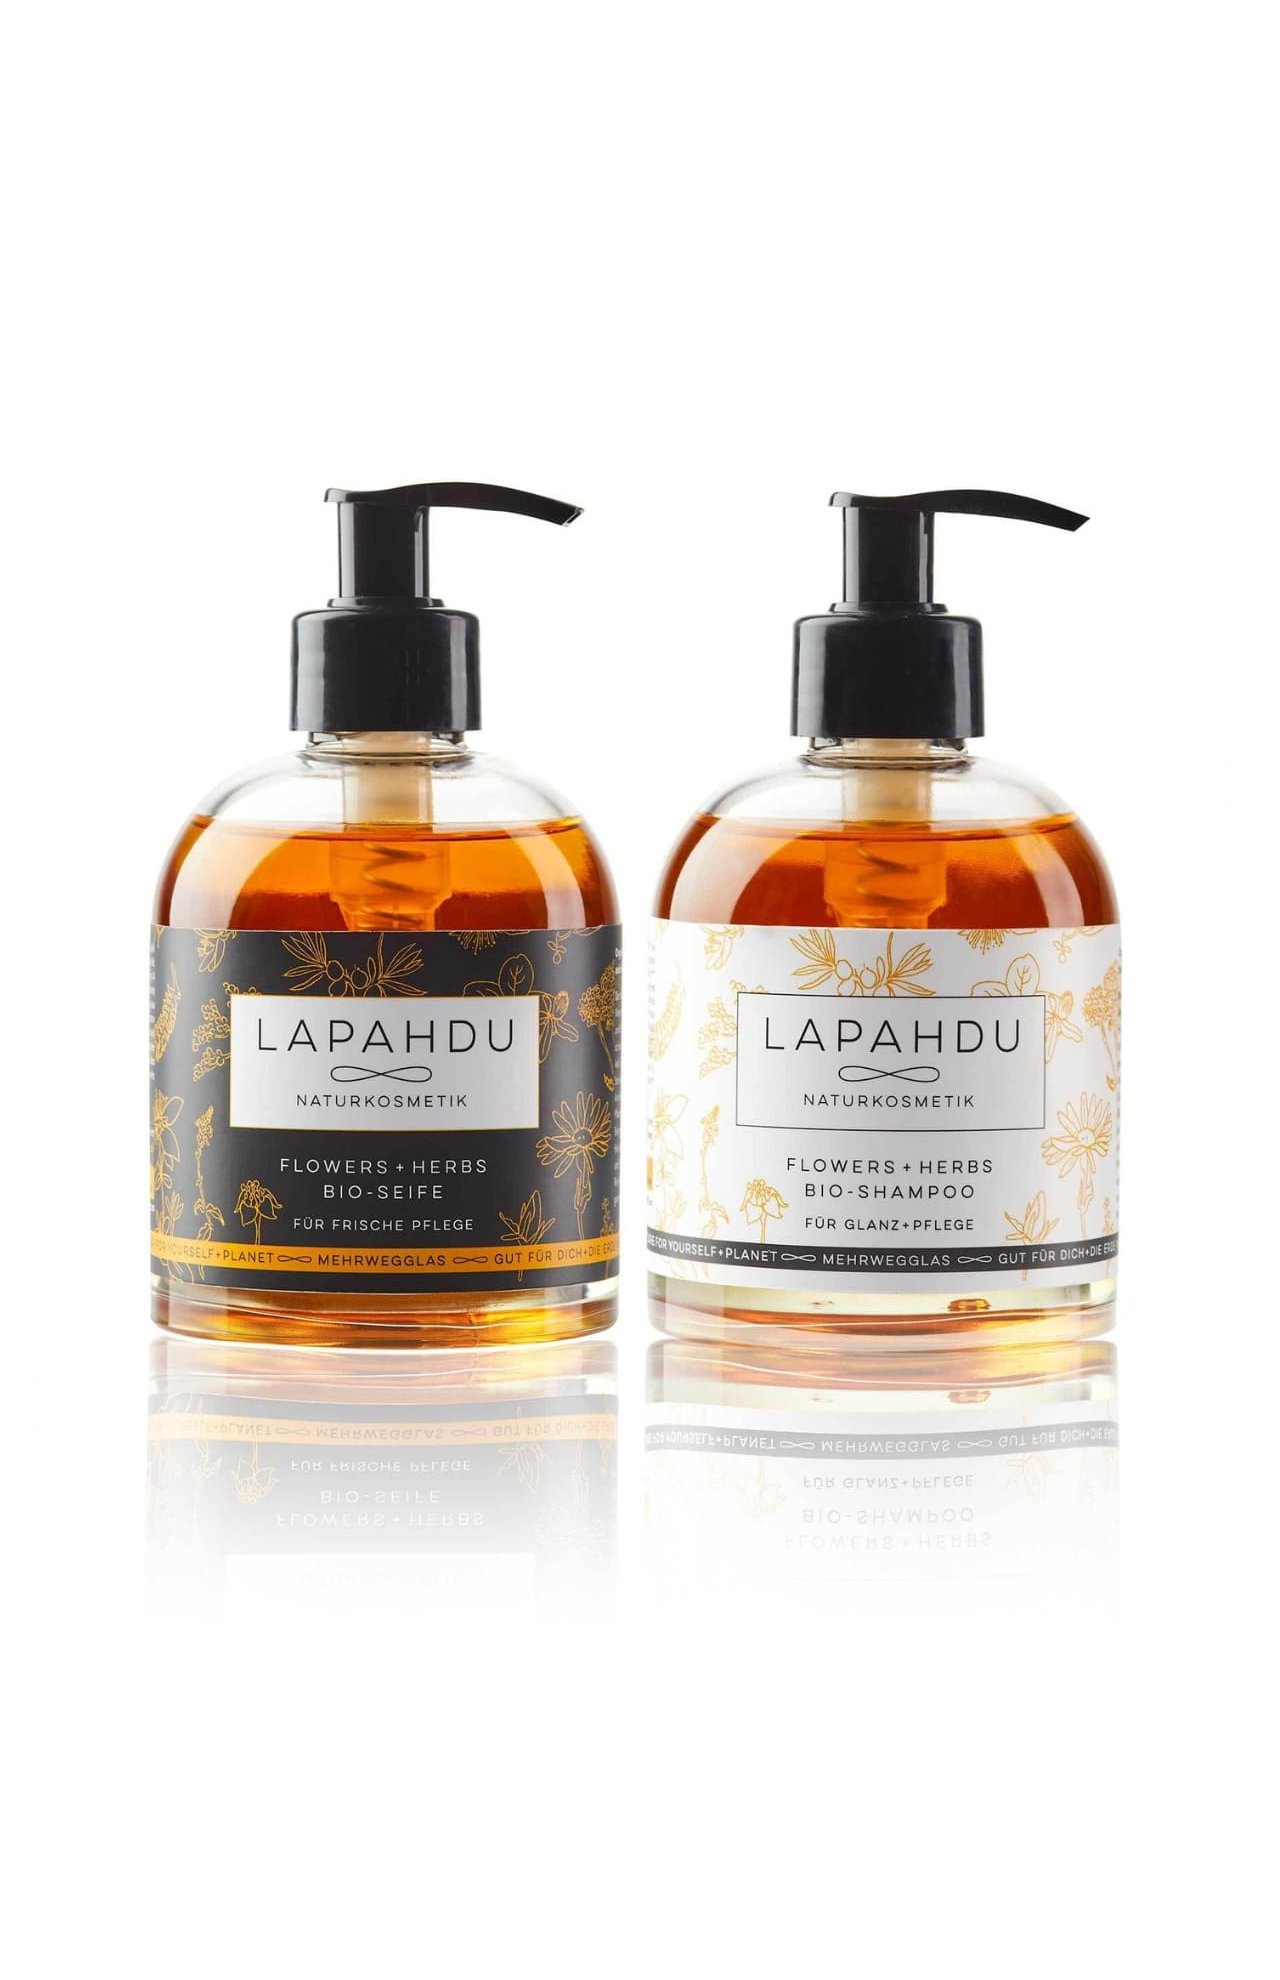 Lapahdu Naturkosmetik
Flowers + Herbs Bio Shampoo und Flüssigseife im Sparset, in je 250 ml Pfand Glasflasche